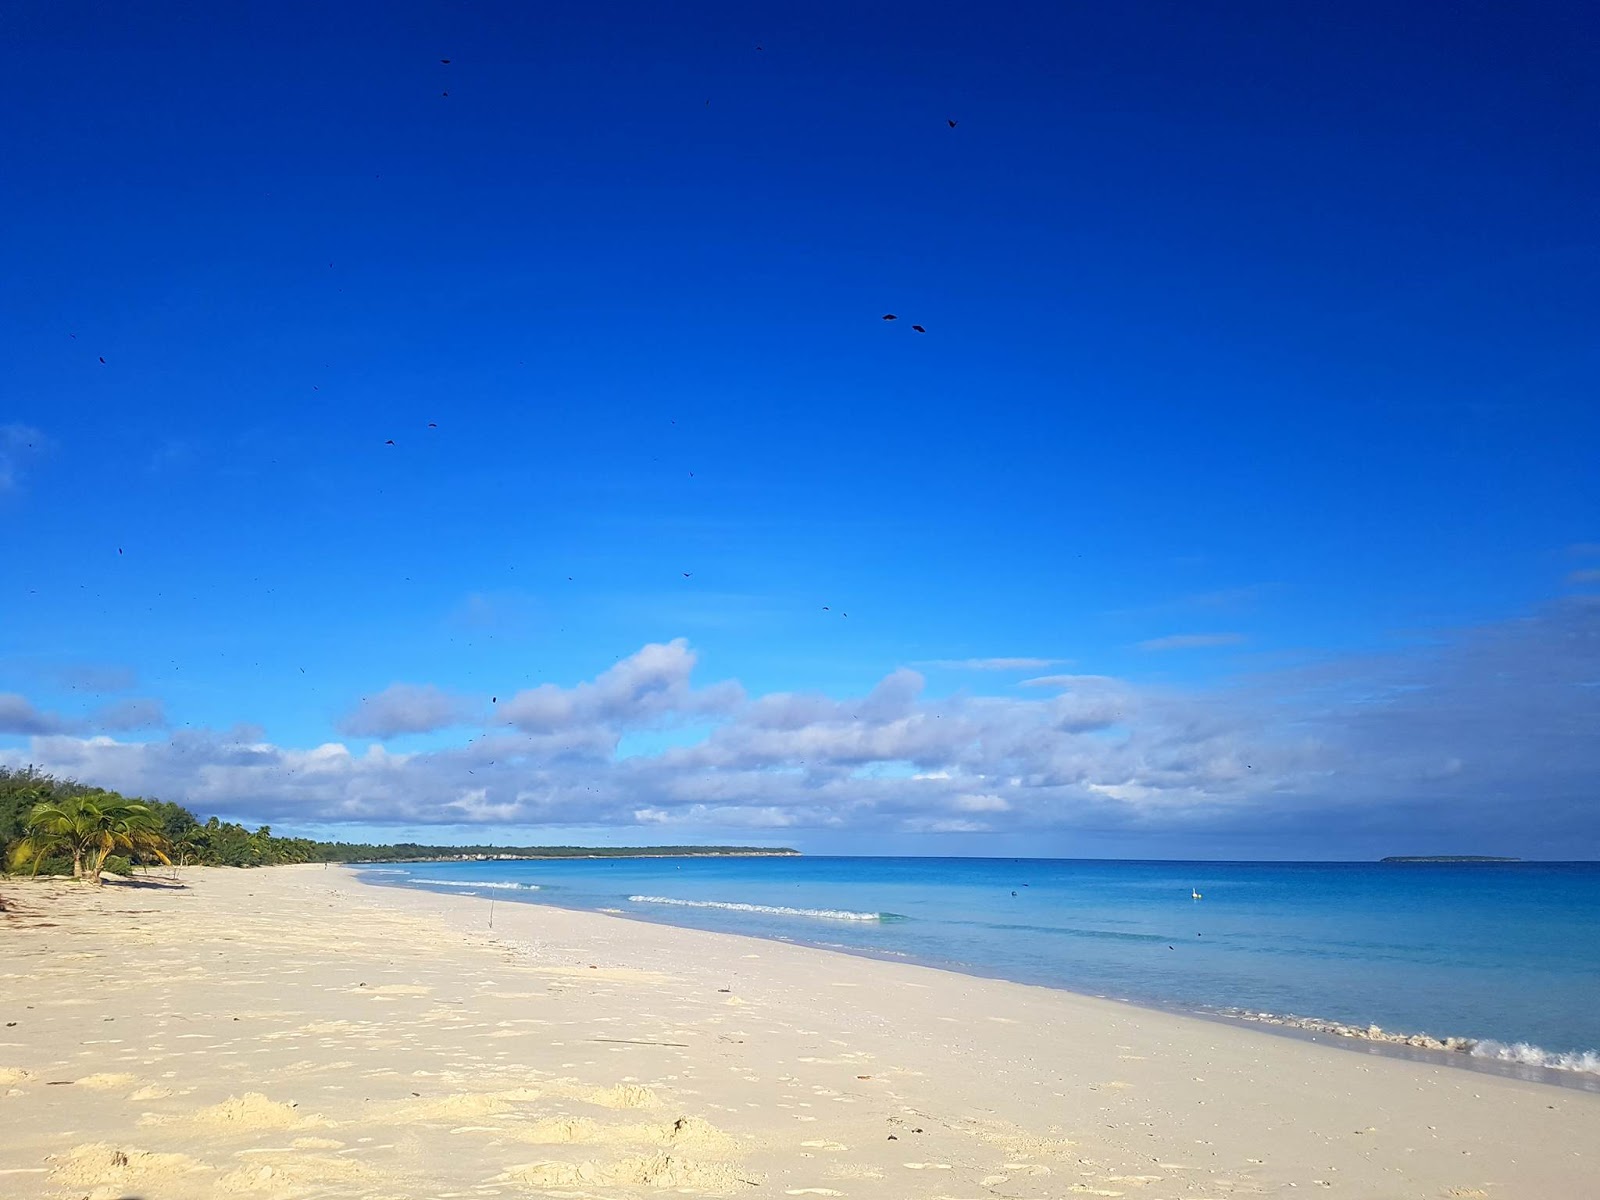 Zdjęcie Mouli Beach z powierzchnią biały piasek